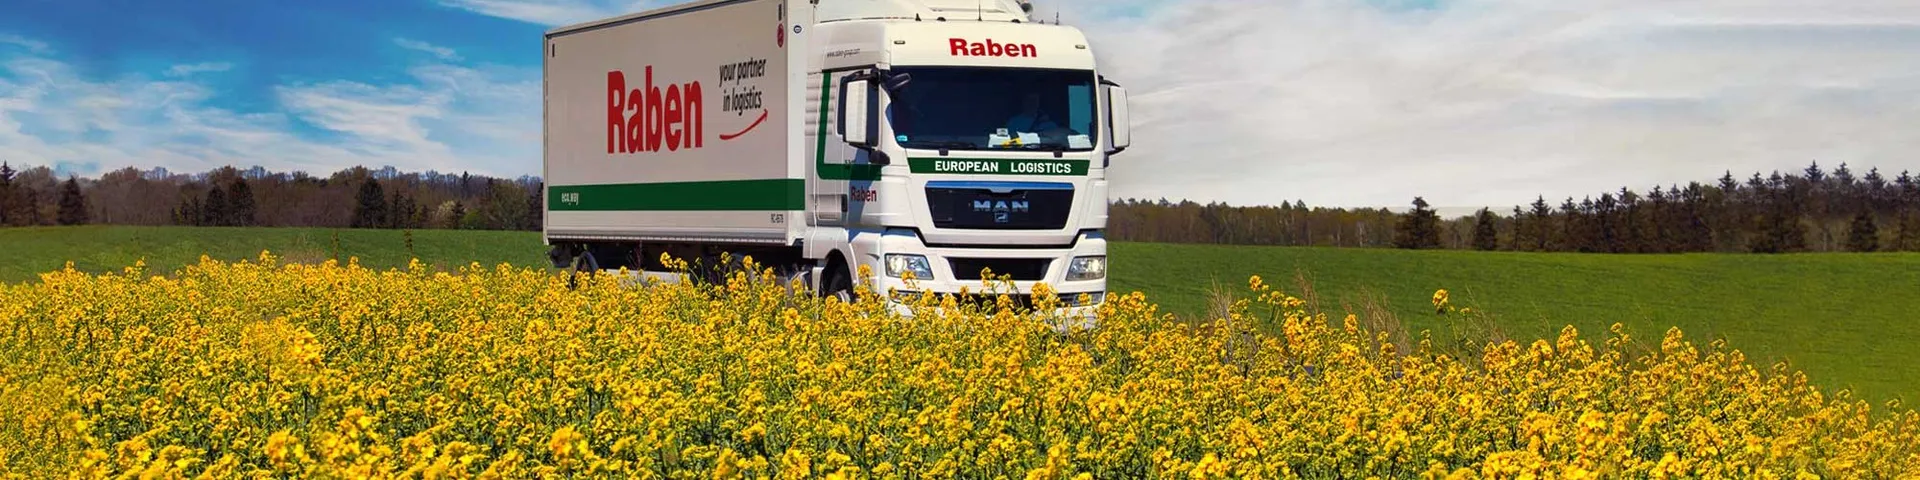 Raben Truck 